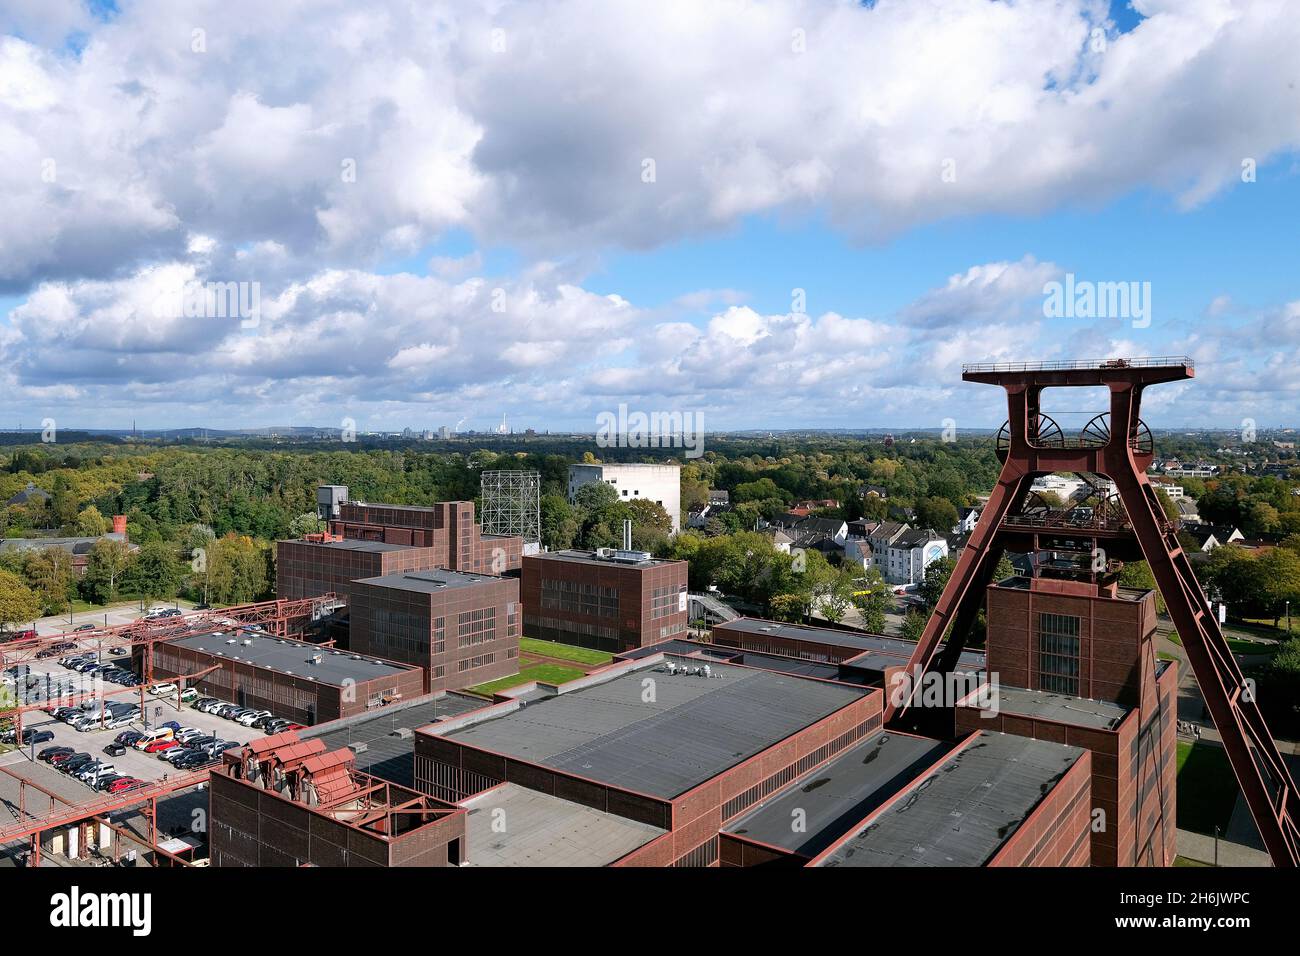 Deutschland, NRW, Essen, Zeche Zollverein; Blick von der Dachterrasse des Besucherzentrums auf das GelŠnde der Zeche Zollverein mit Fšrderturm, dem re Stock Photo